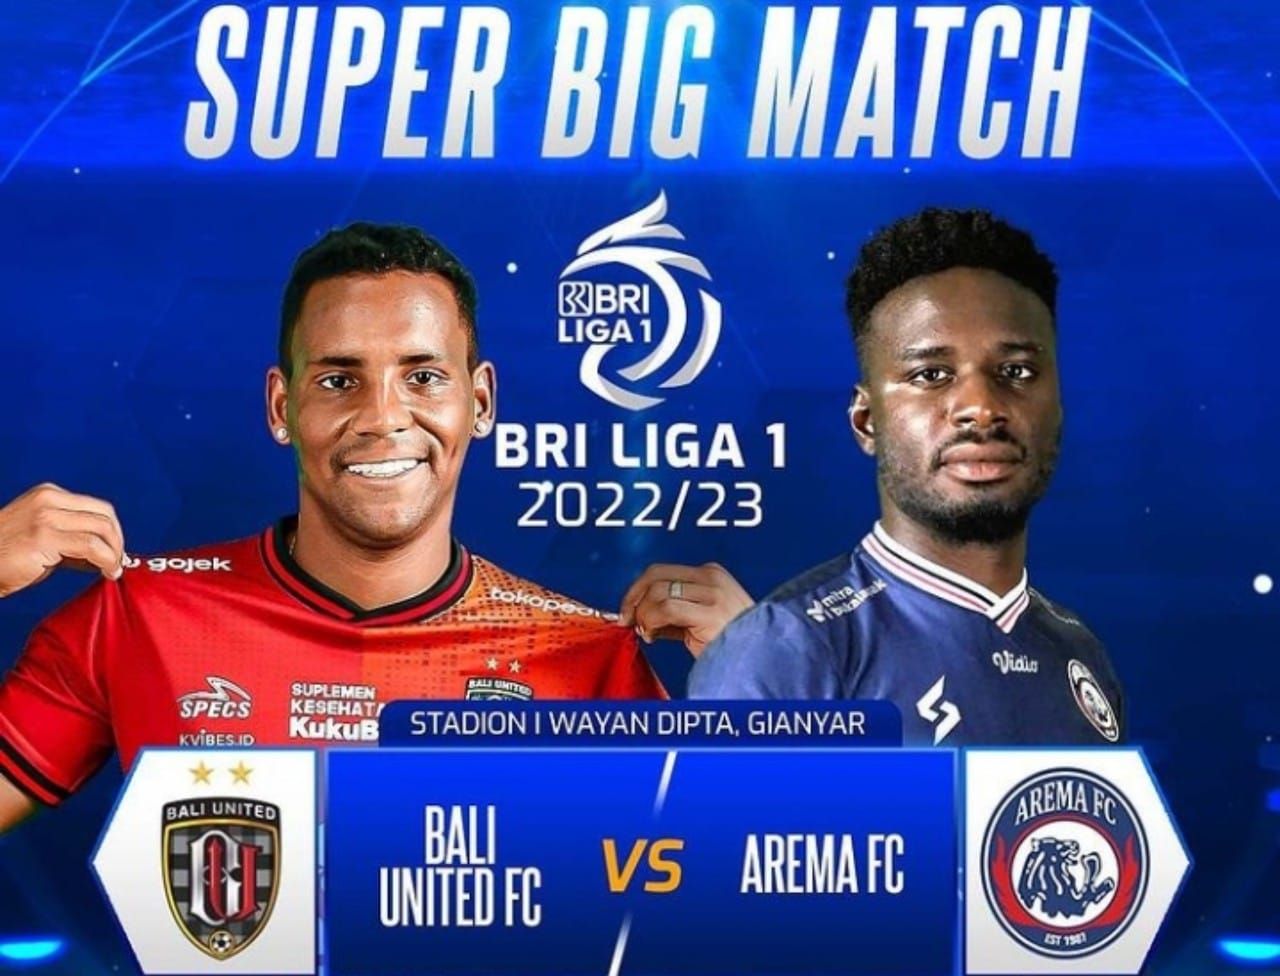 Link live streaming BRI Liga 1 antara Bali United vs Arema FC, Sabtu 13 Agustus 2022